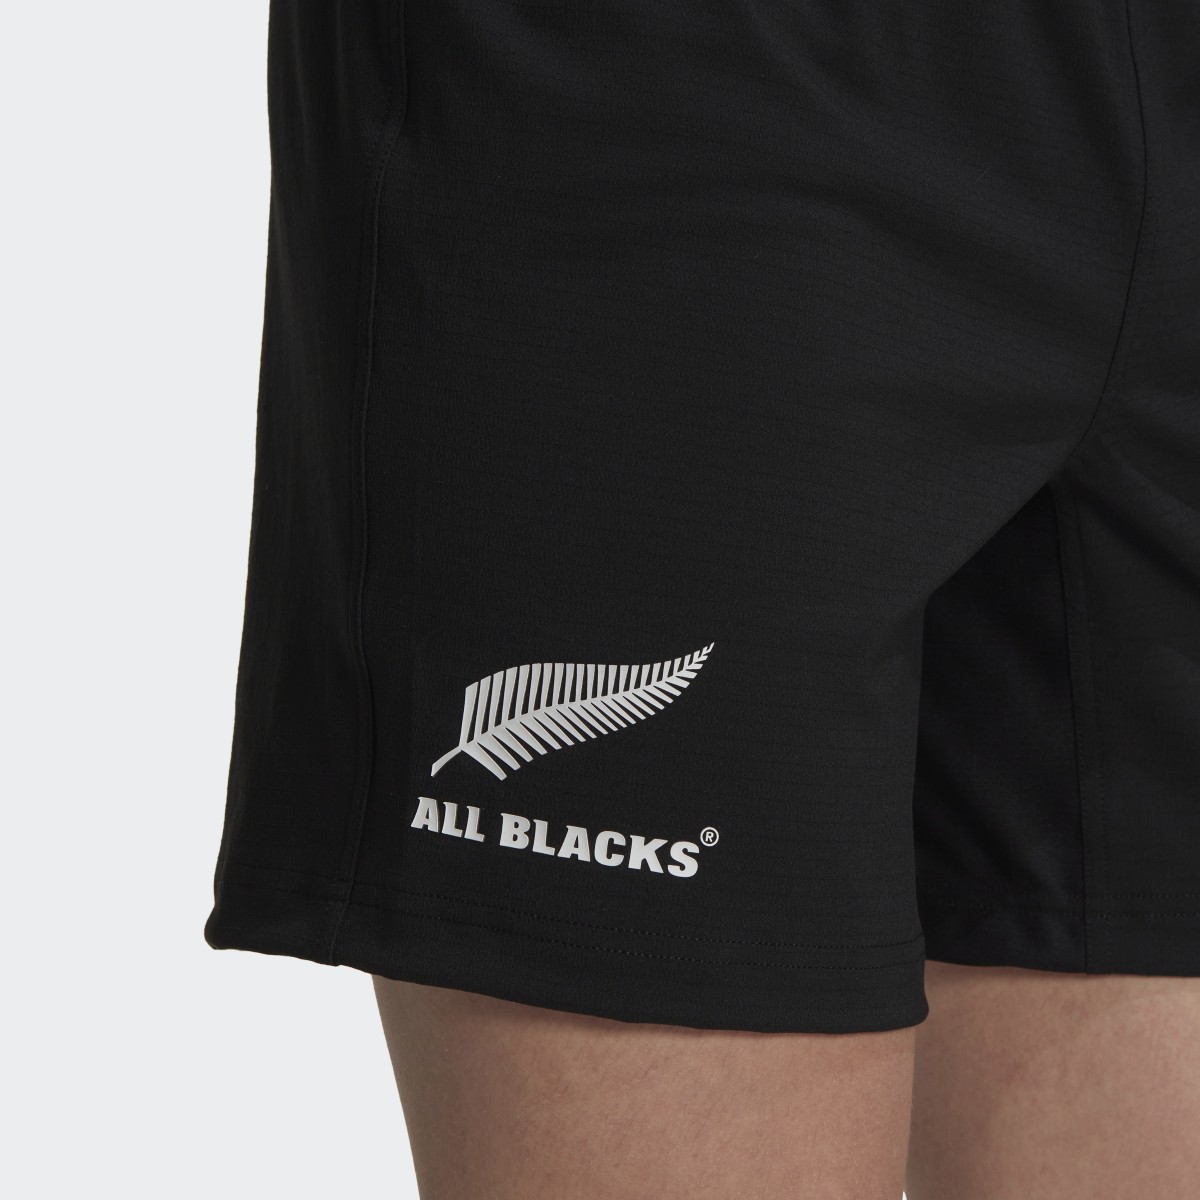 Adidas Calções Principais dos All Blacks. 6